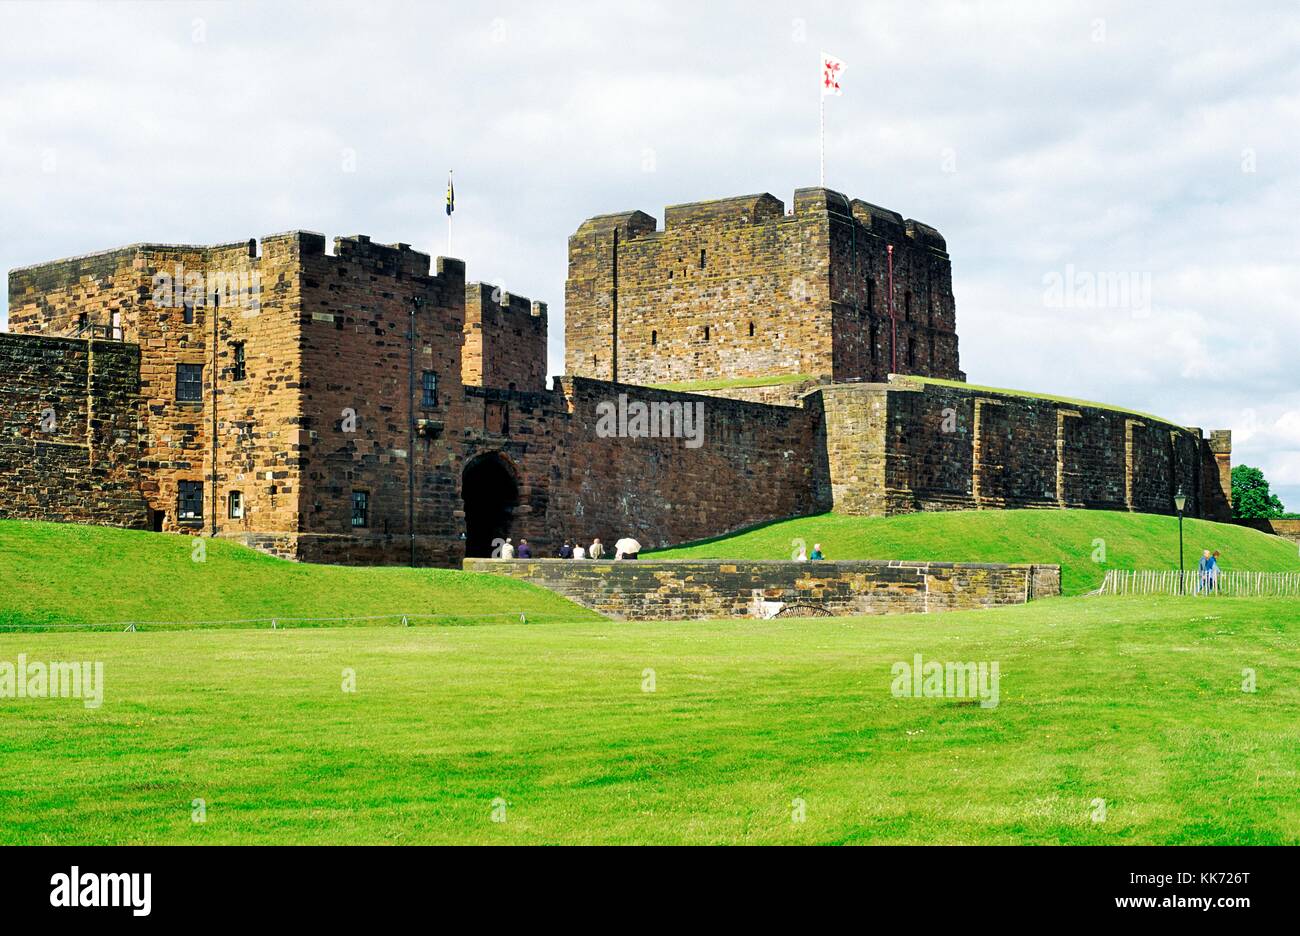 Carlisle Castle Norman mantenga la torre y puerta de entrada principal, Cumbria, al noroeste de Inglaterra, cerca de la frontera con Escocia Foto de stock